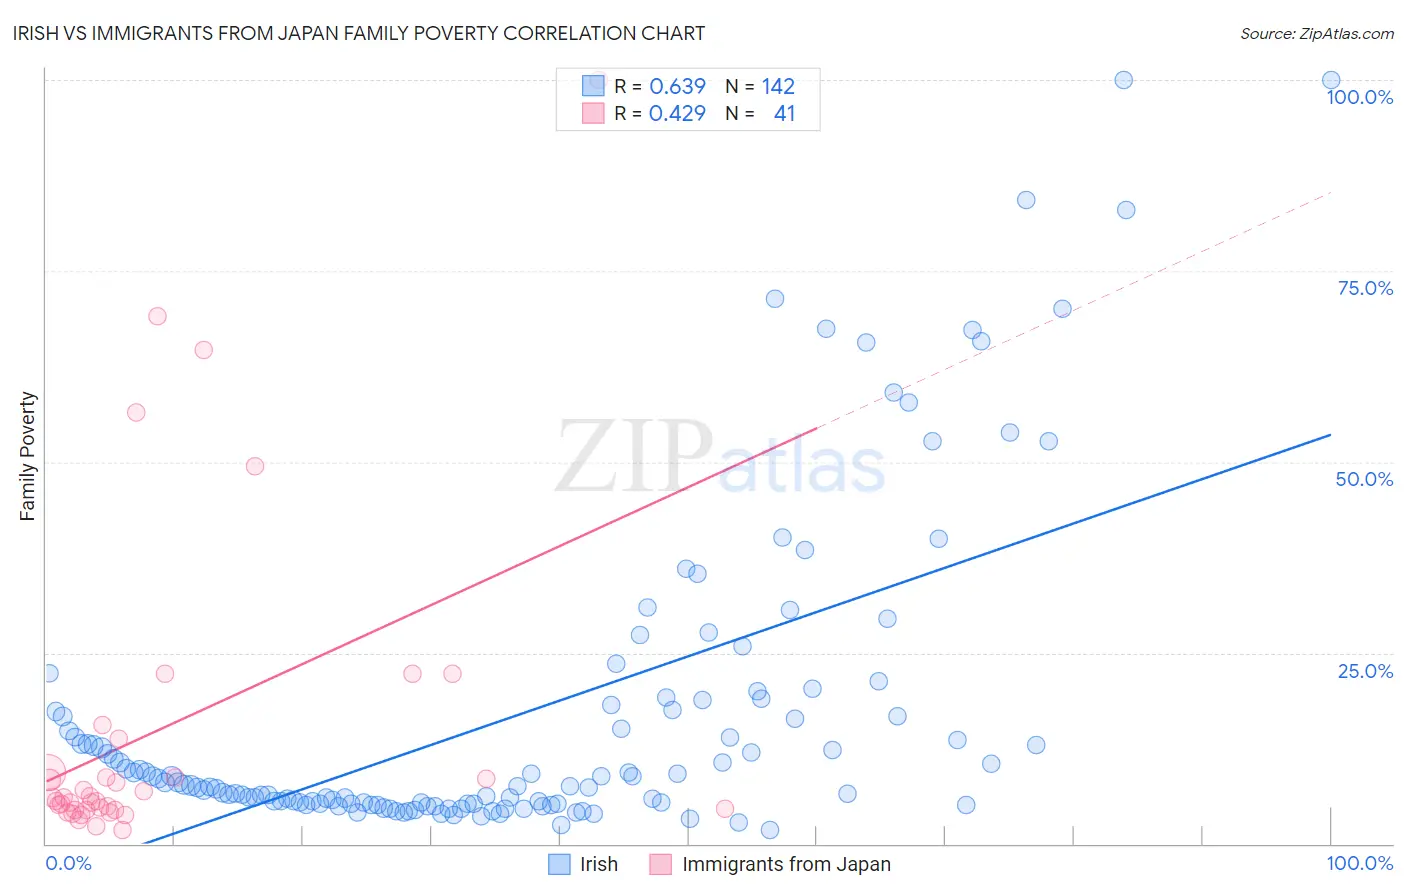 Irish vs Immigrants from Japan Family Poverty